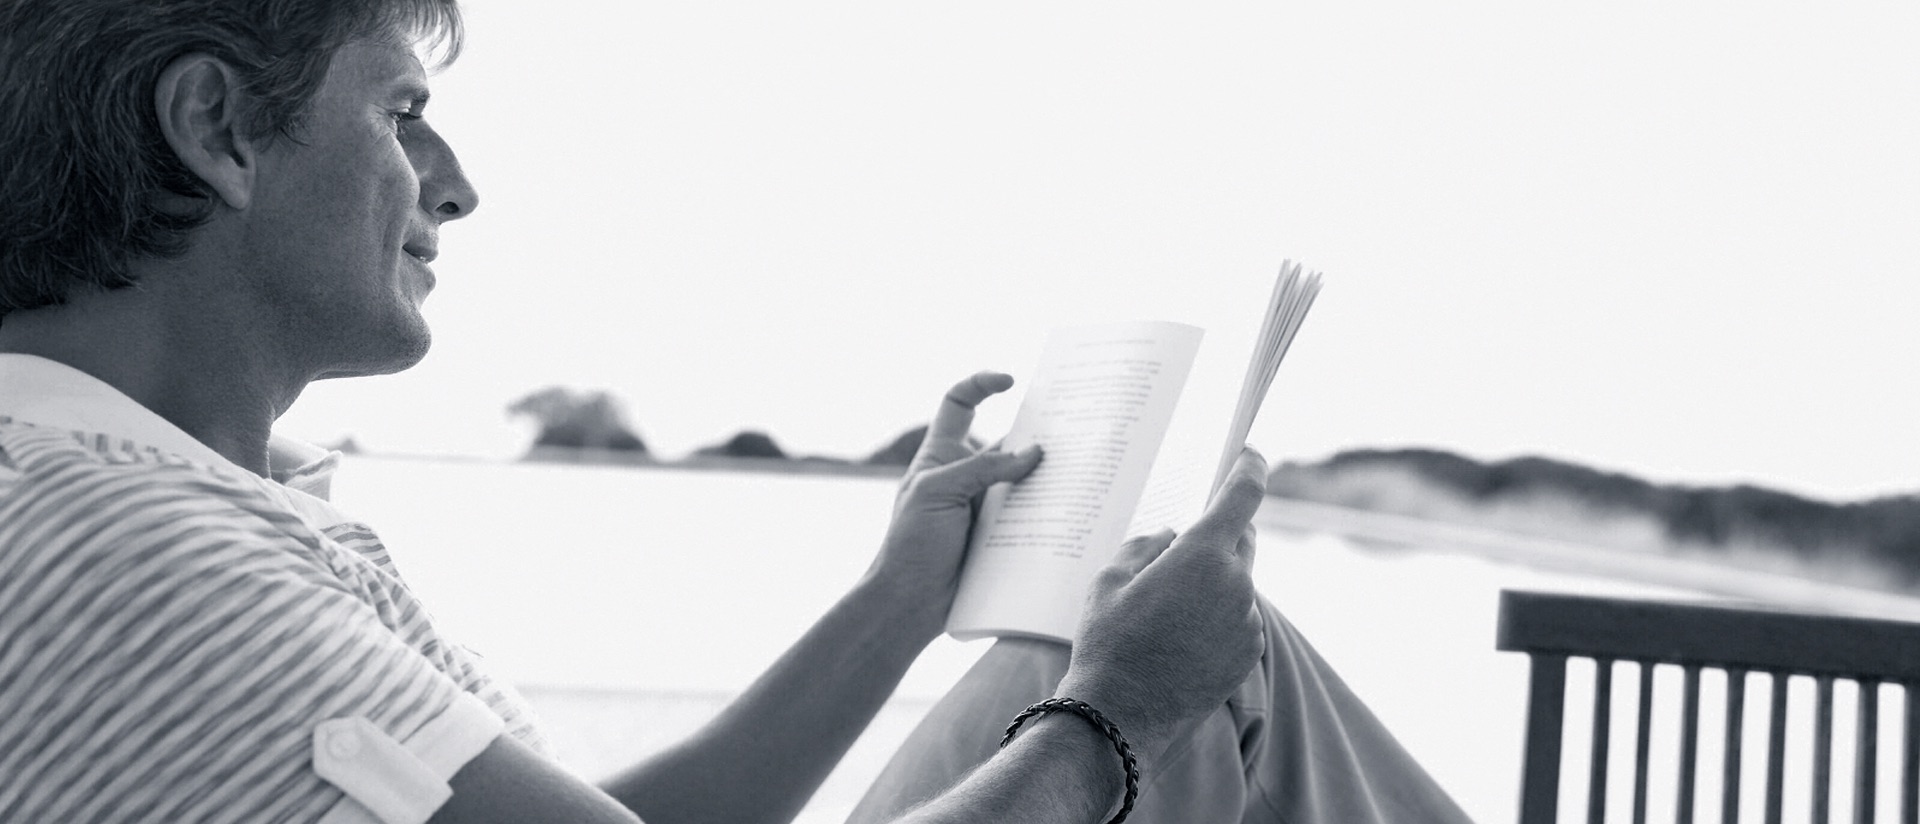 Moody Philosophy, fotografia in bianco e nero, uomo legge un libro sulla spiaggia